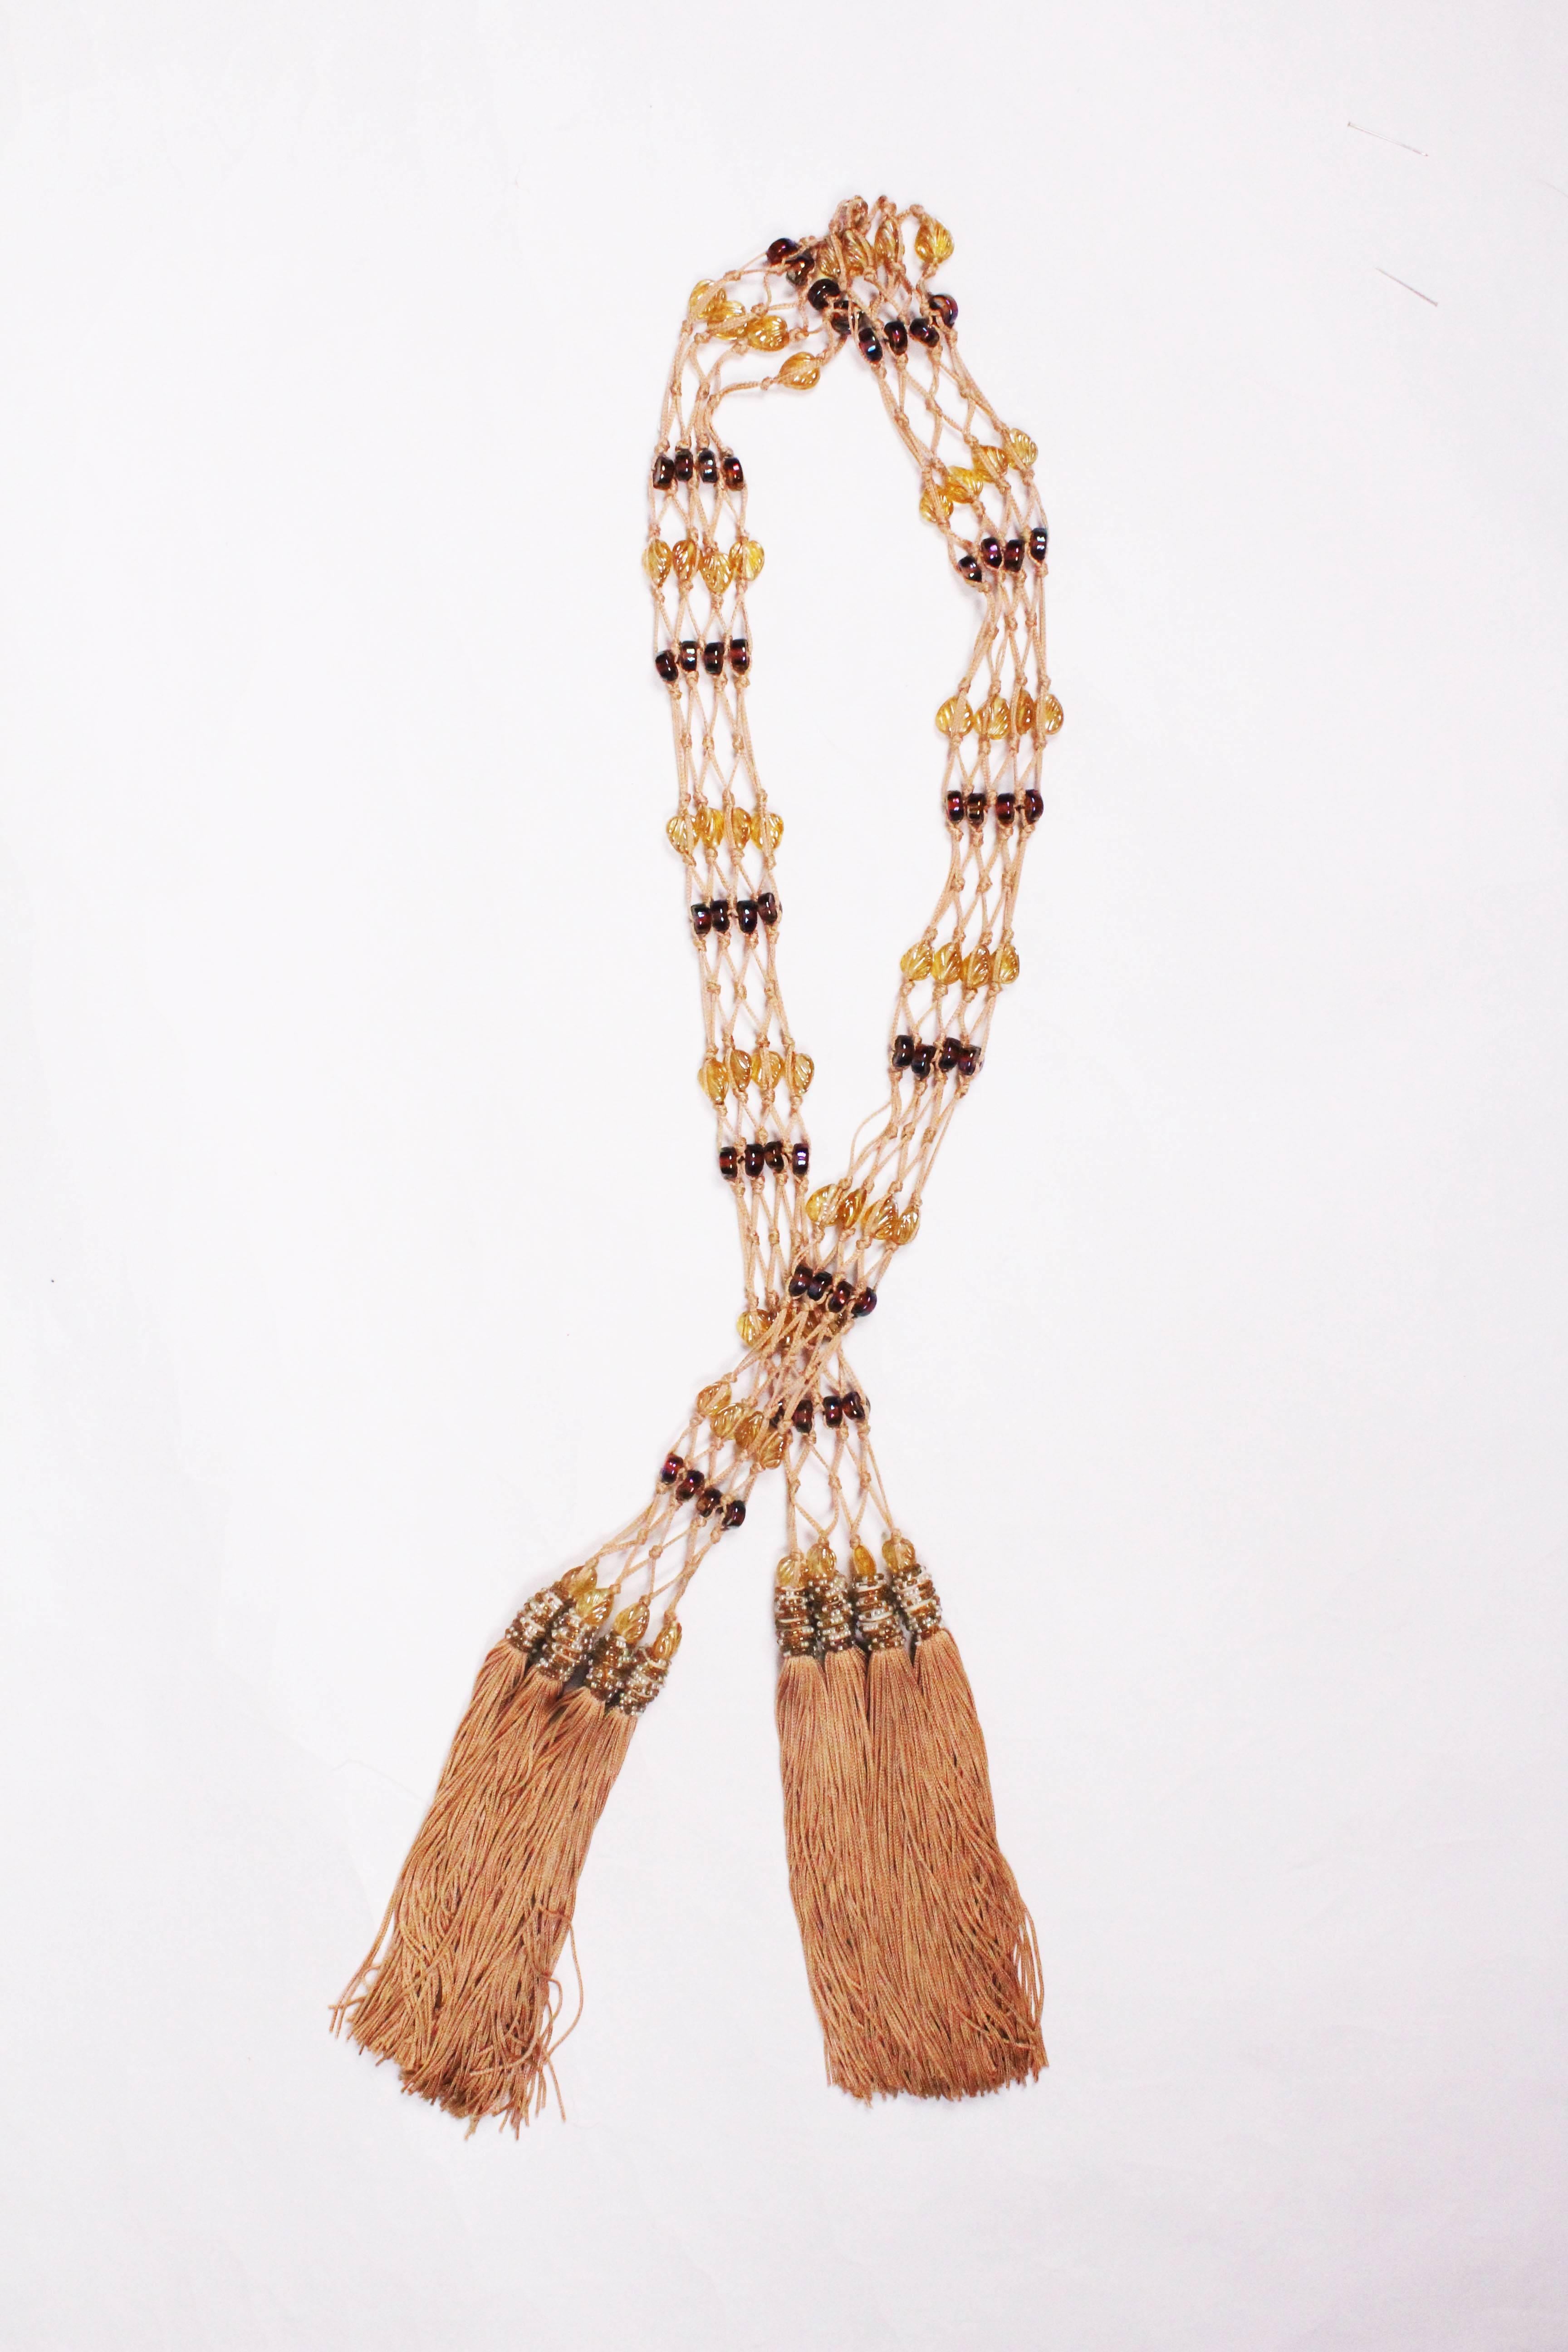 Ein toller Vintage-Designergürtel von Ferragamo. Der Gürtel ist aus biskuitfarbener Kordel/Seide, mit vier Reihen Perlen und Quasten an beiden Enden.